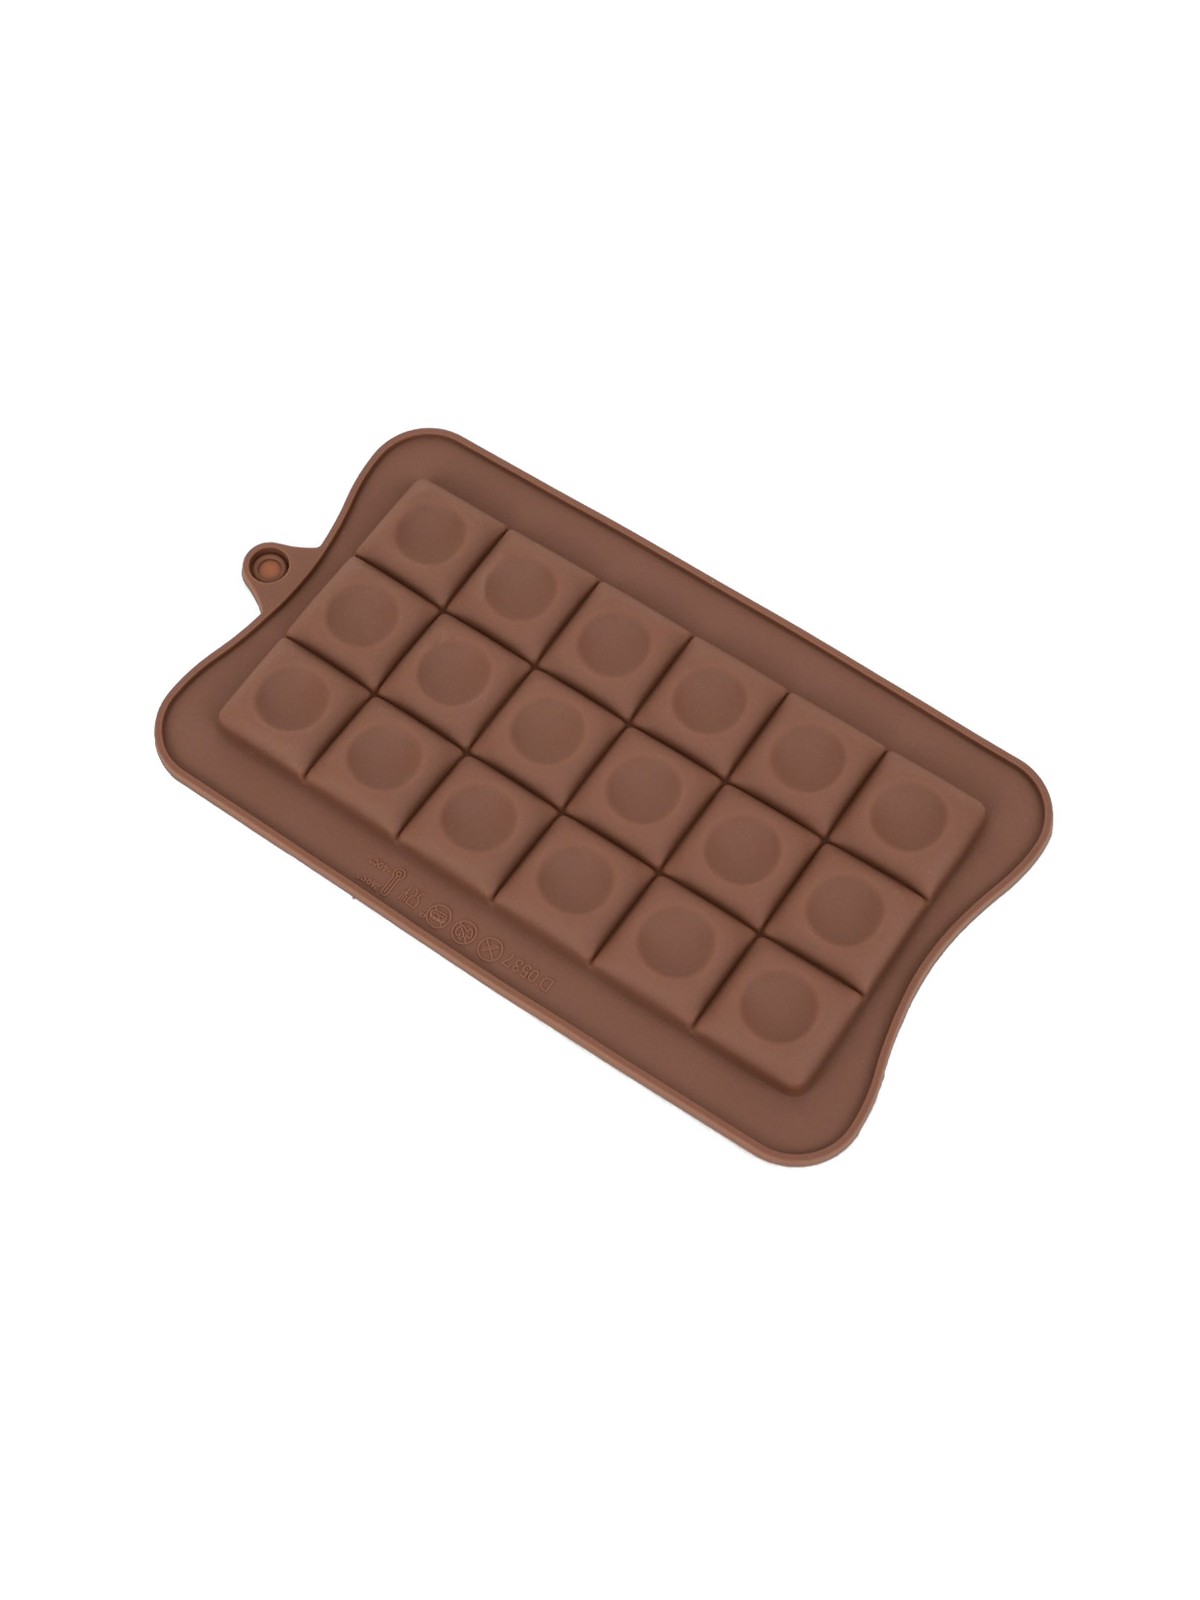 Silikonform für Schokolade - Würfel mit Loch